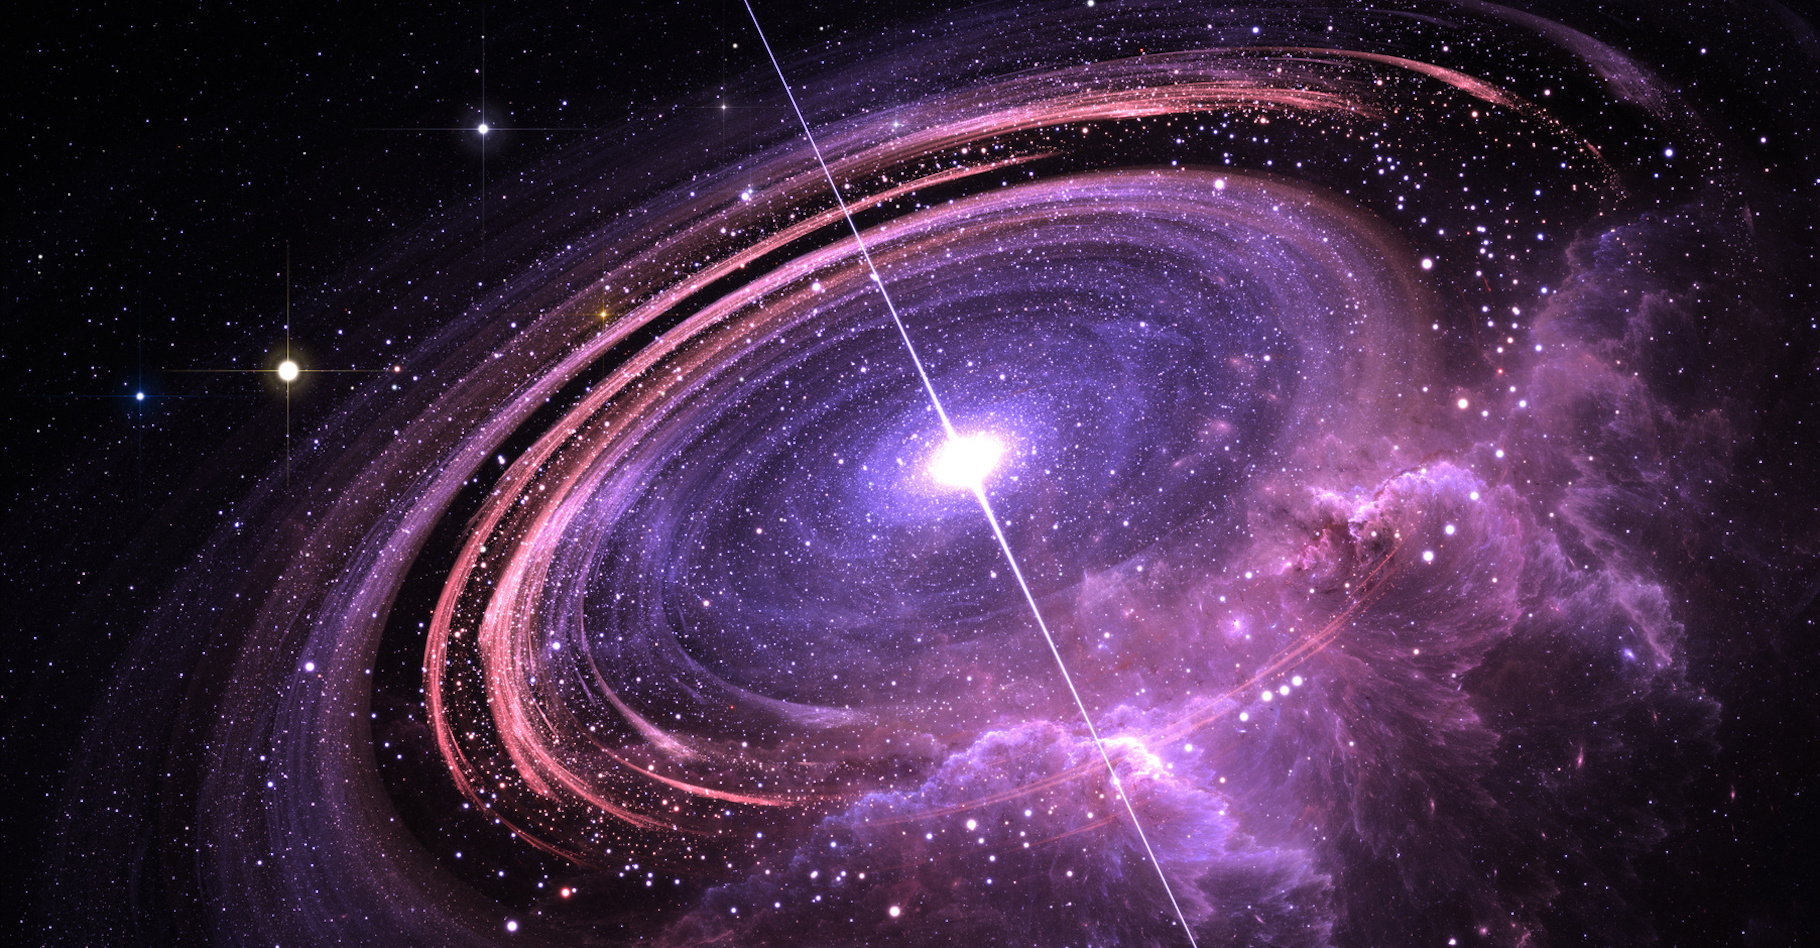 Un pulsar pour guider les futurs vaisseaux spatiaux lors des voyages interstellaires ? © Peter Jurik, Adobe Stock